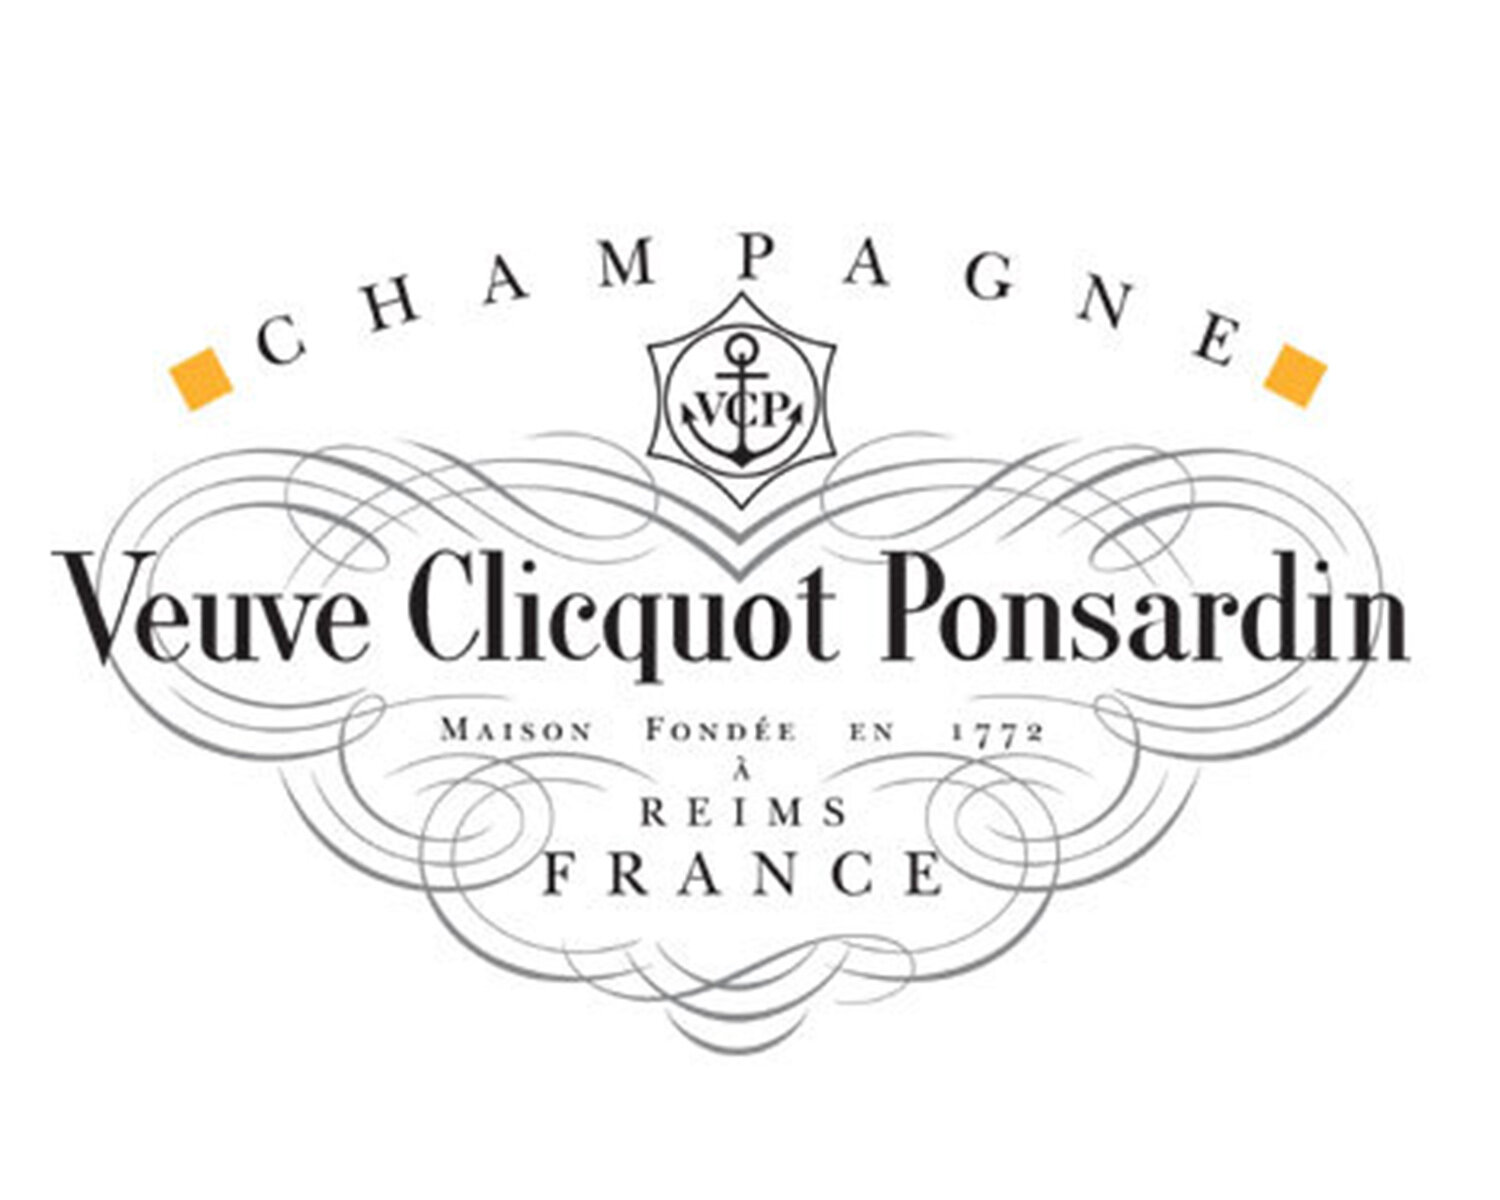 Veuve Clicquot Ponsardin.jpg